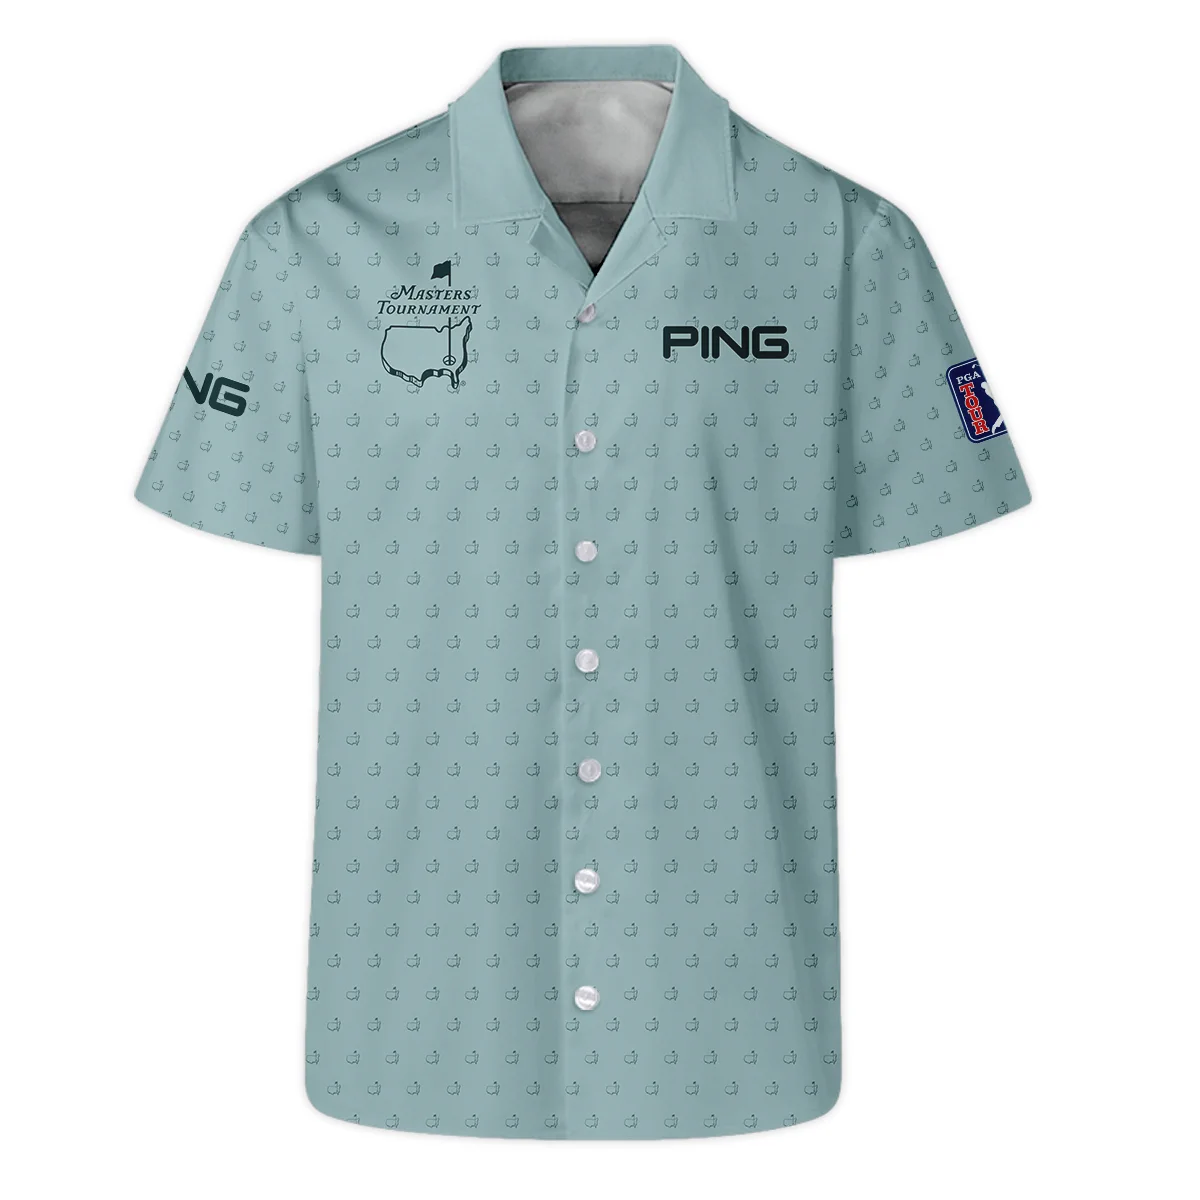 Golf Pattern Masters Tournament Ping Zipper Hoodie Shirt Cyan Pattern All Over Print Zipper Hoodie Shirt